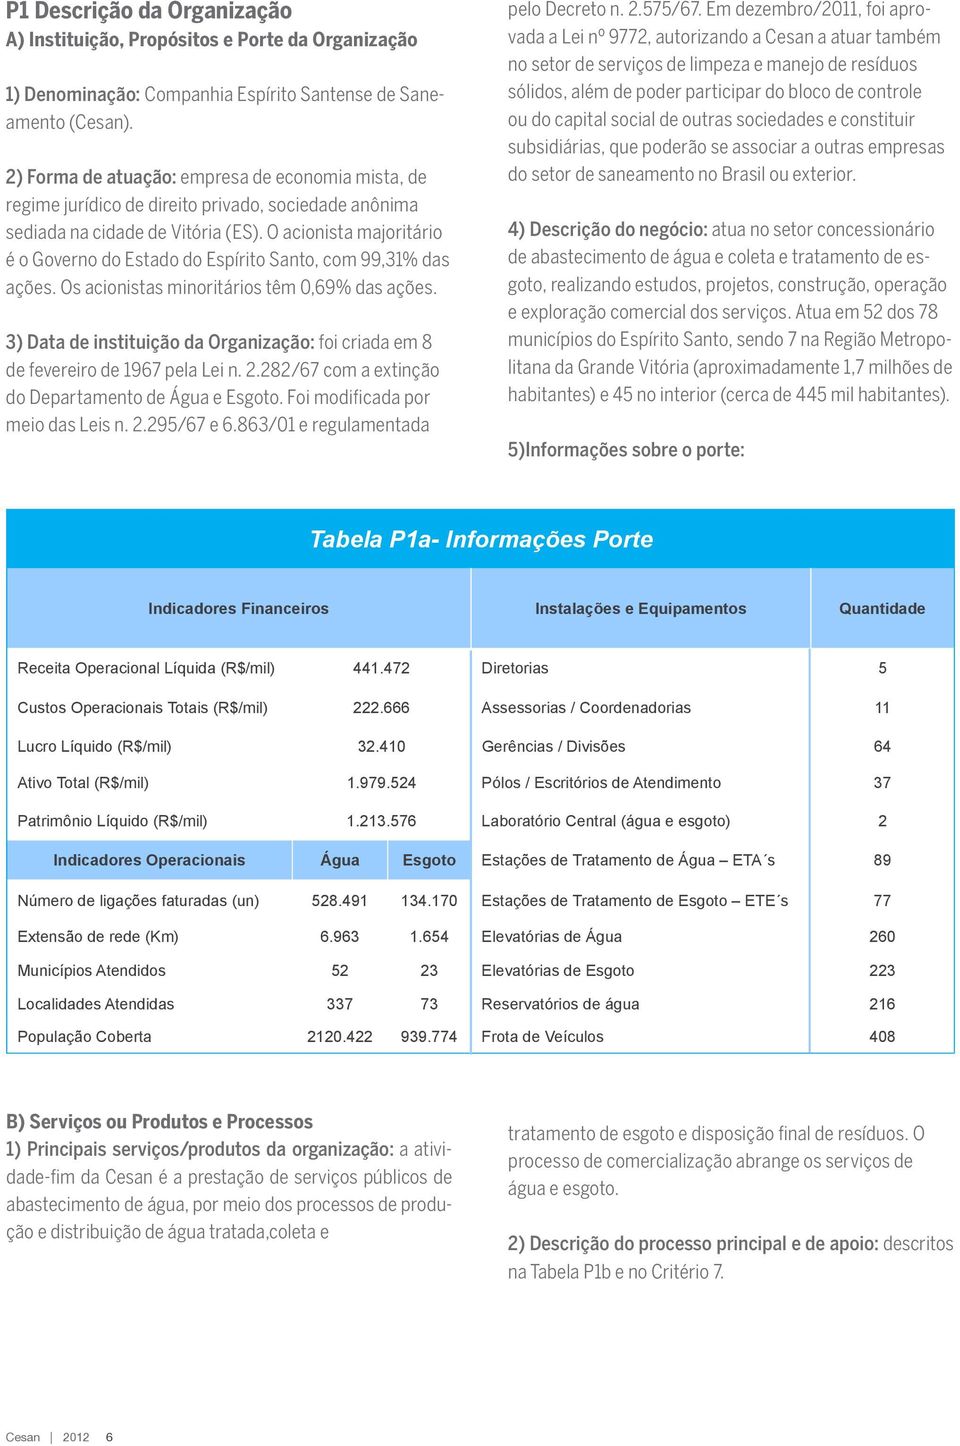 O acionista majoritário é o Governo do Estado do Espírito Santo, com 99,31% das ações. Os acionistas minoritários têm 0,69% das ações.